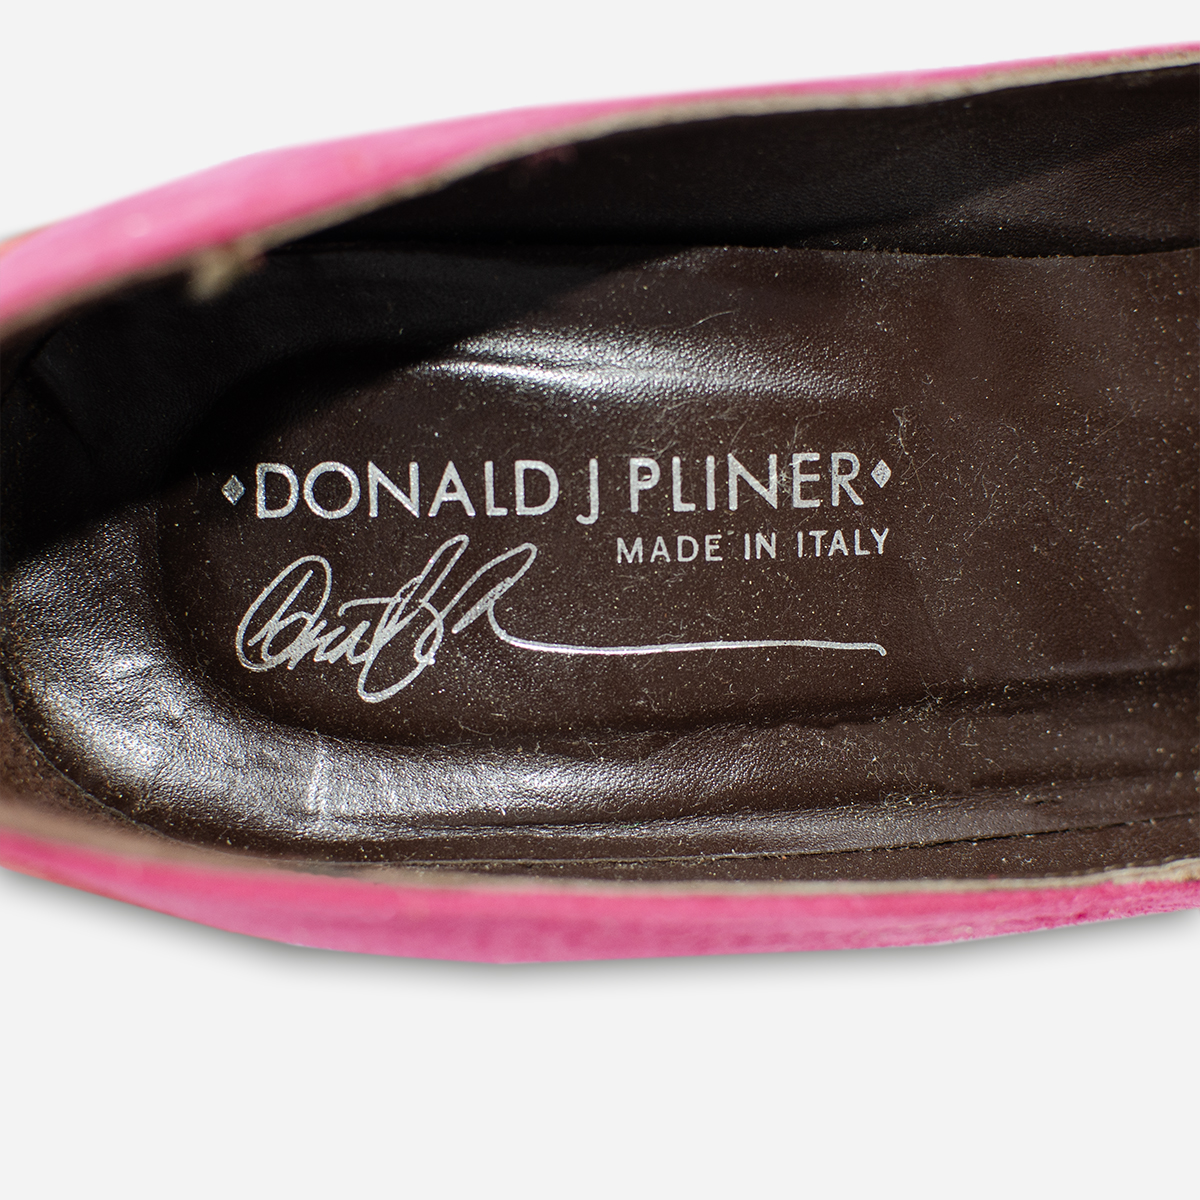 Donald pliner shoes for women